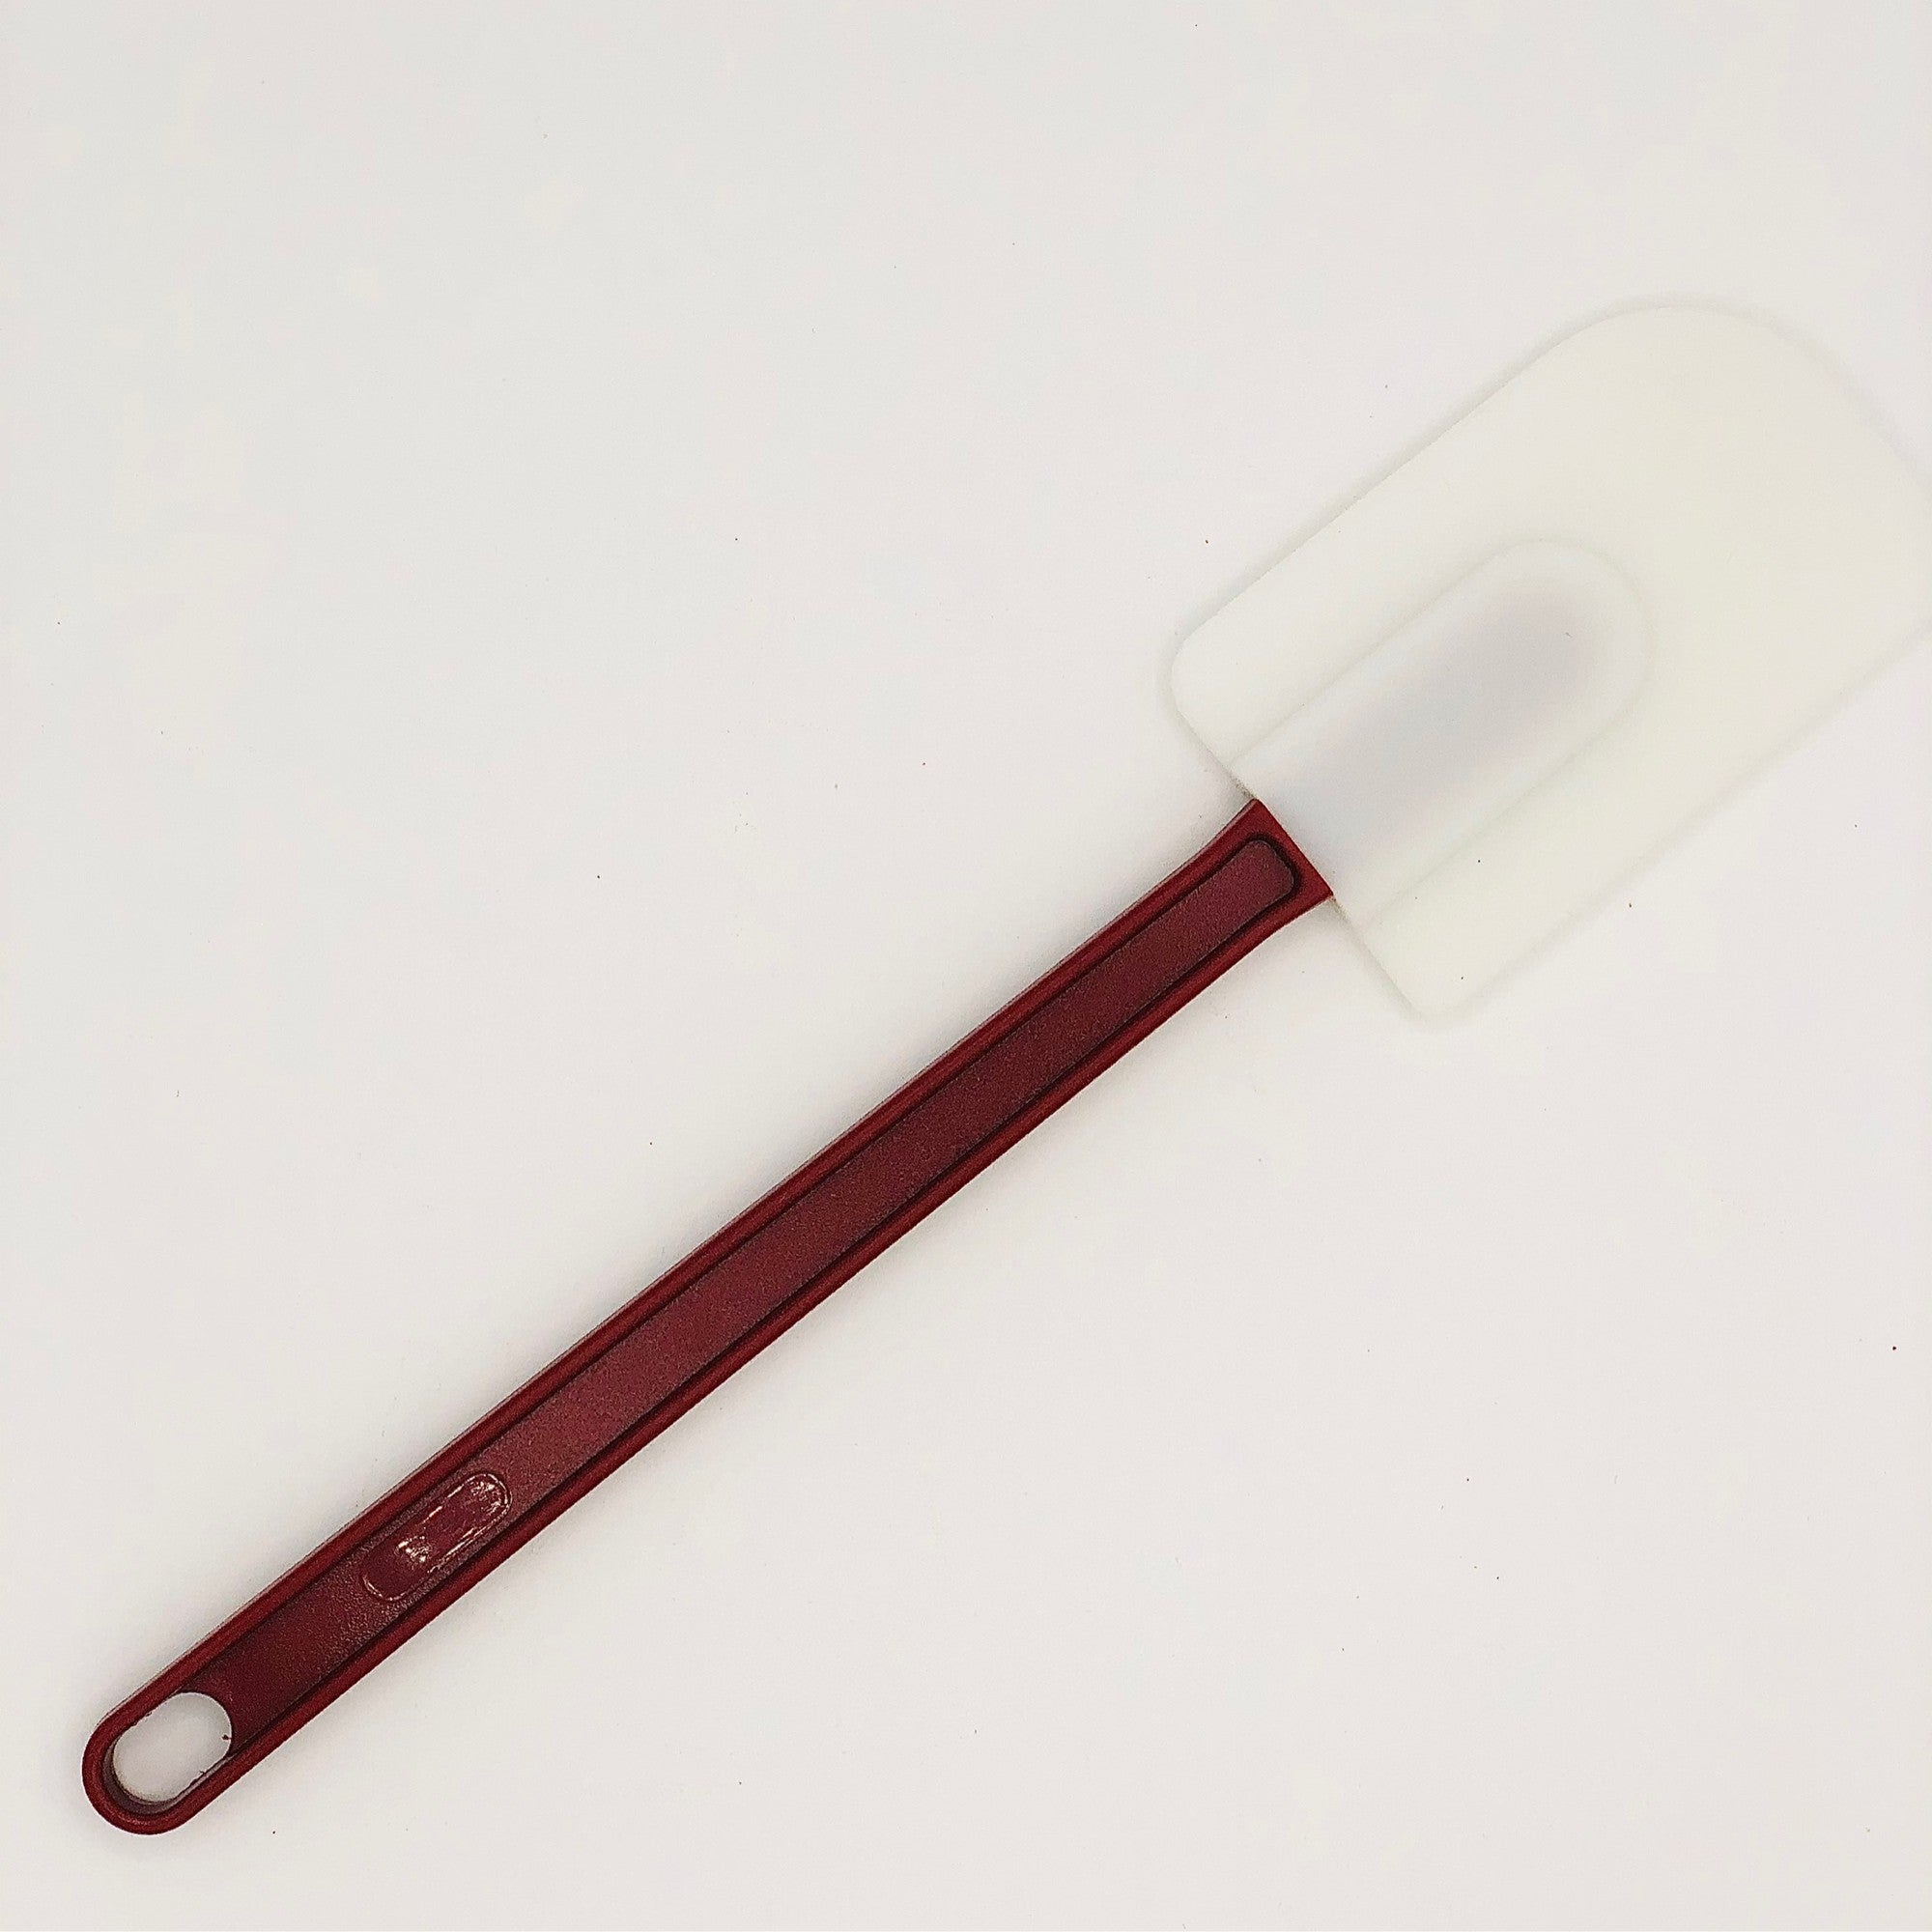 Promo De buyer spatule maryse pour hautes températures chez Mathon